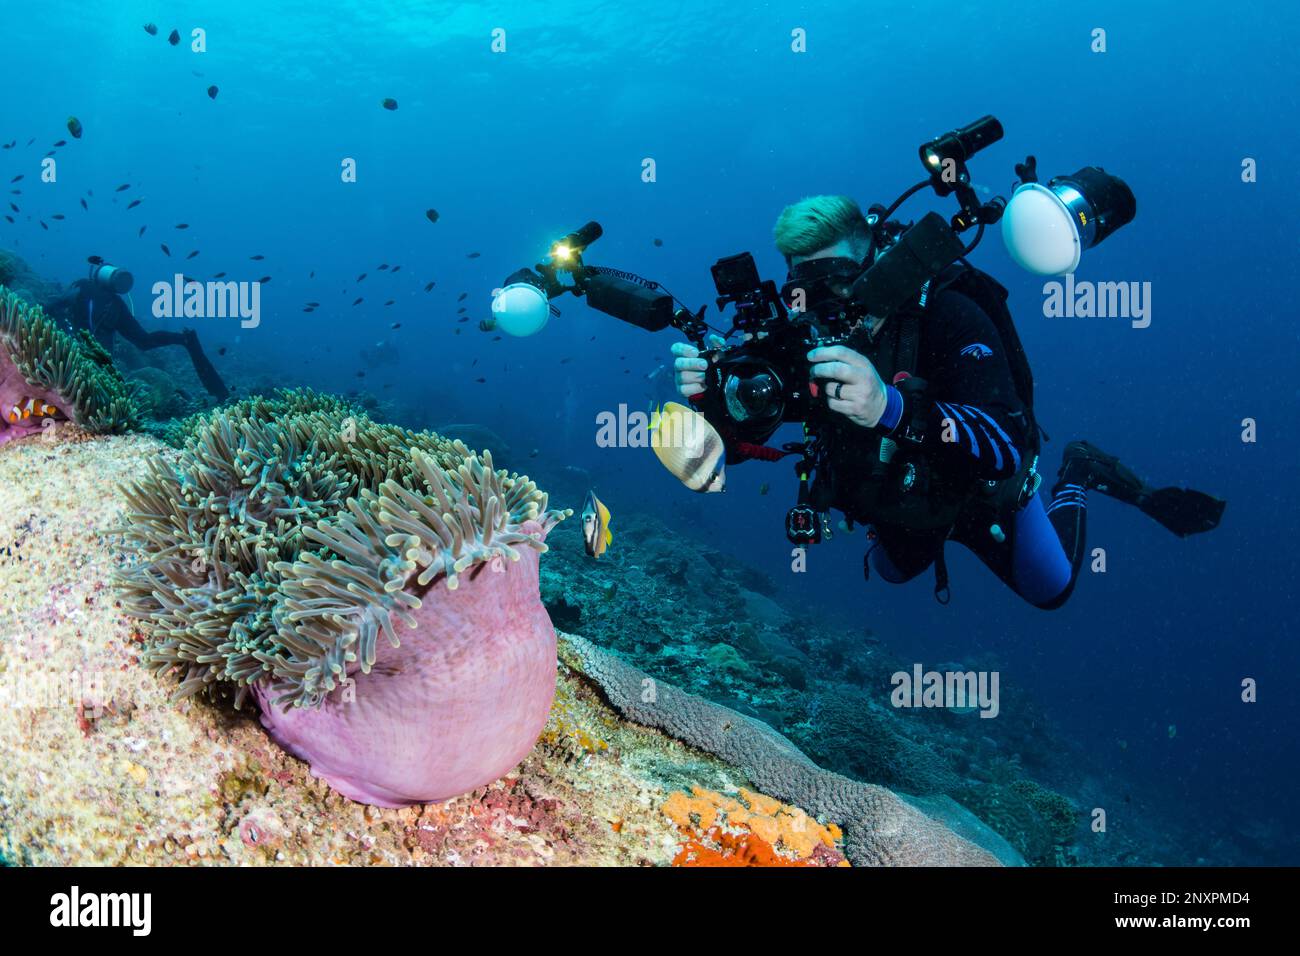 Un photographe sous-marin prend une photo d'un anémone tout en plongée sous-marine Nusa Penida, Bali. Banque D'Images